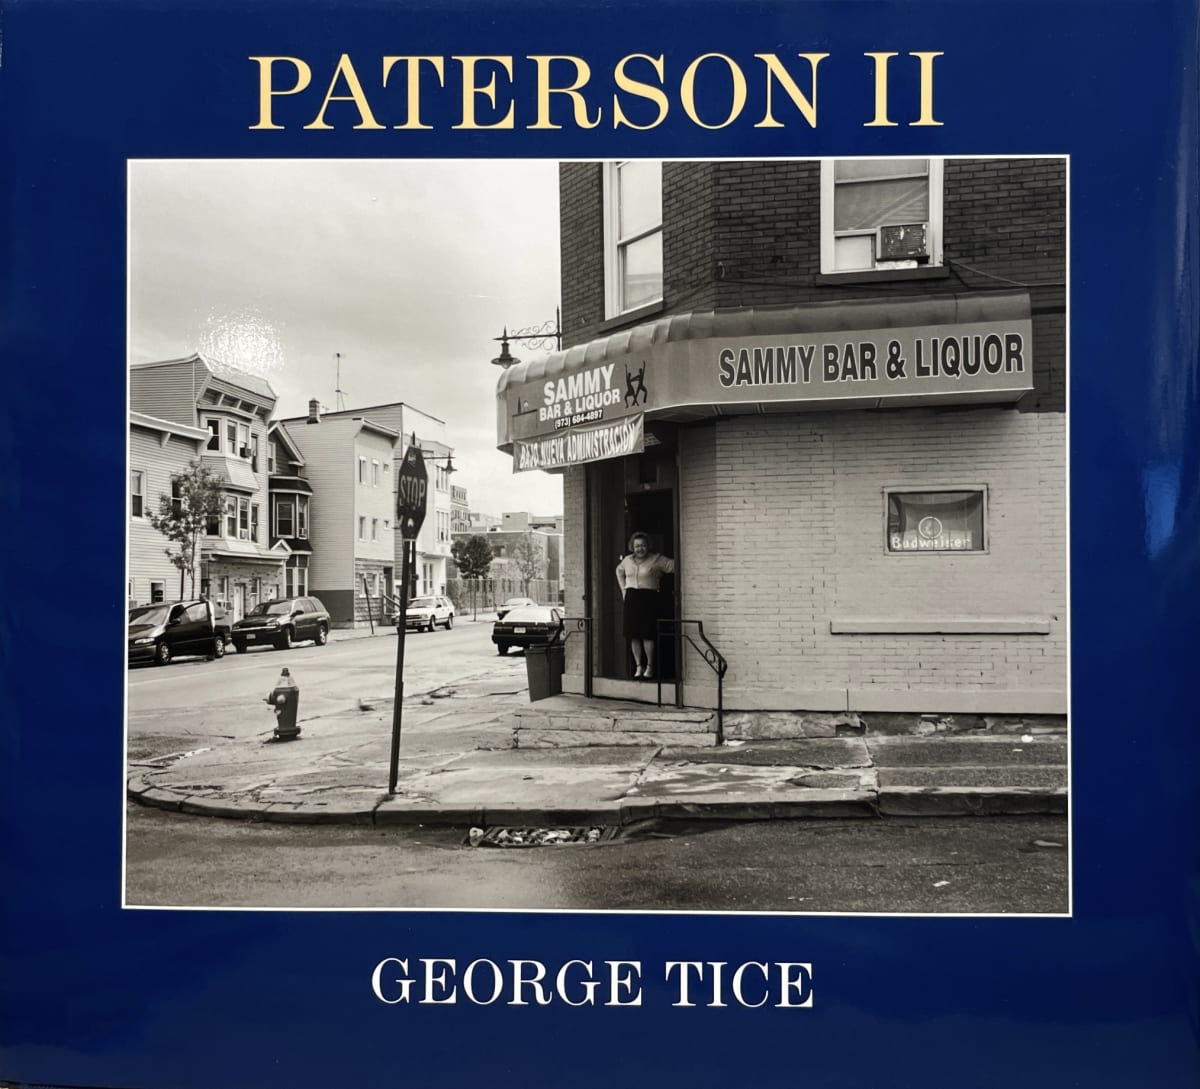 取寄せGeorge Tice Paterson Ⅱ photo book ジョージ A. タイス 写真集 アート写真